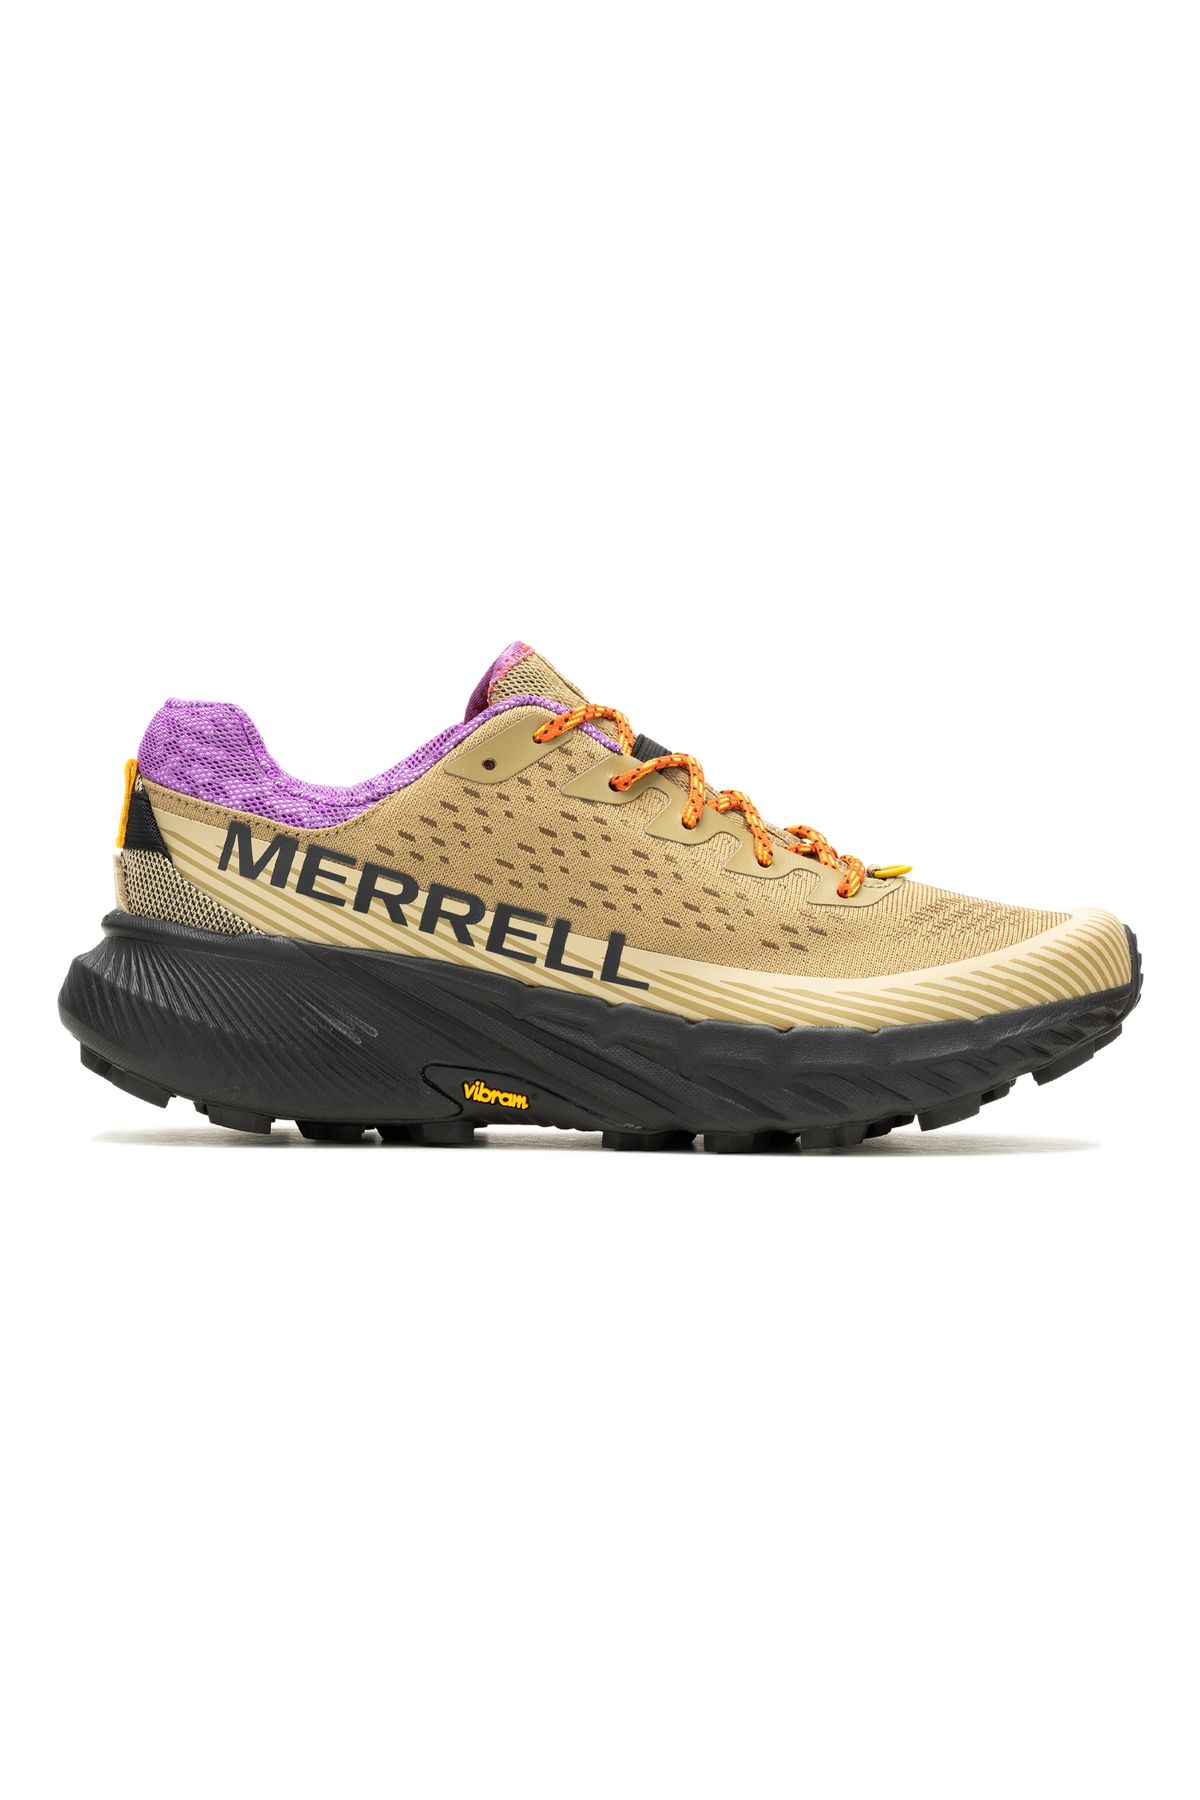 Merrell Agility Peak 5 Erkek Patika Koşu Ayakkabısı